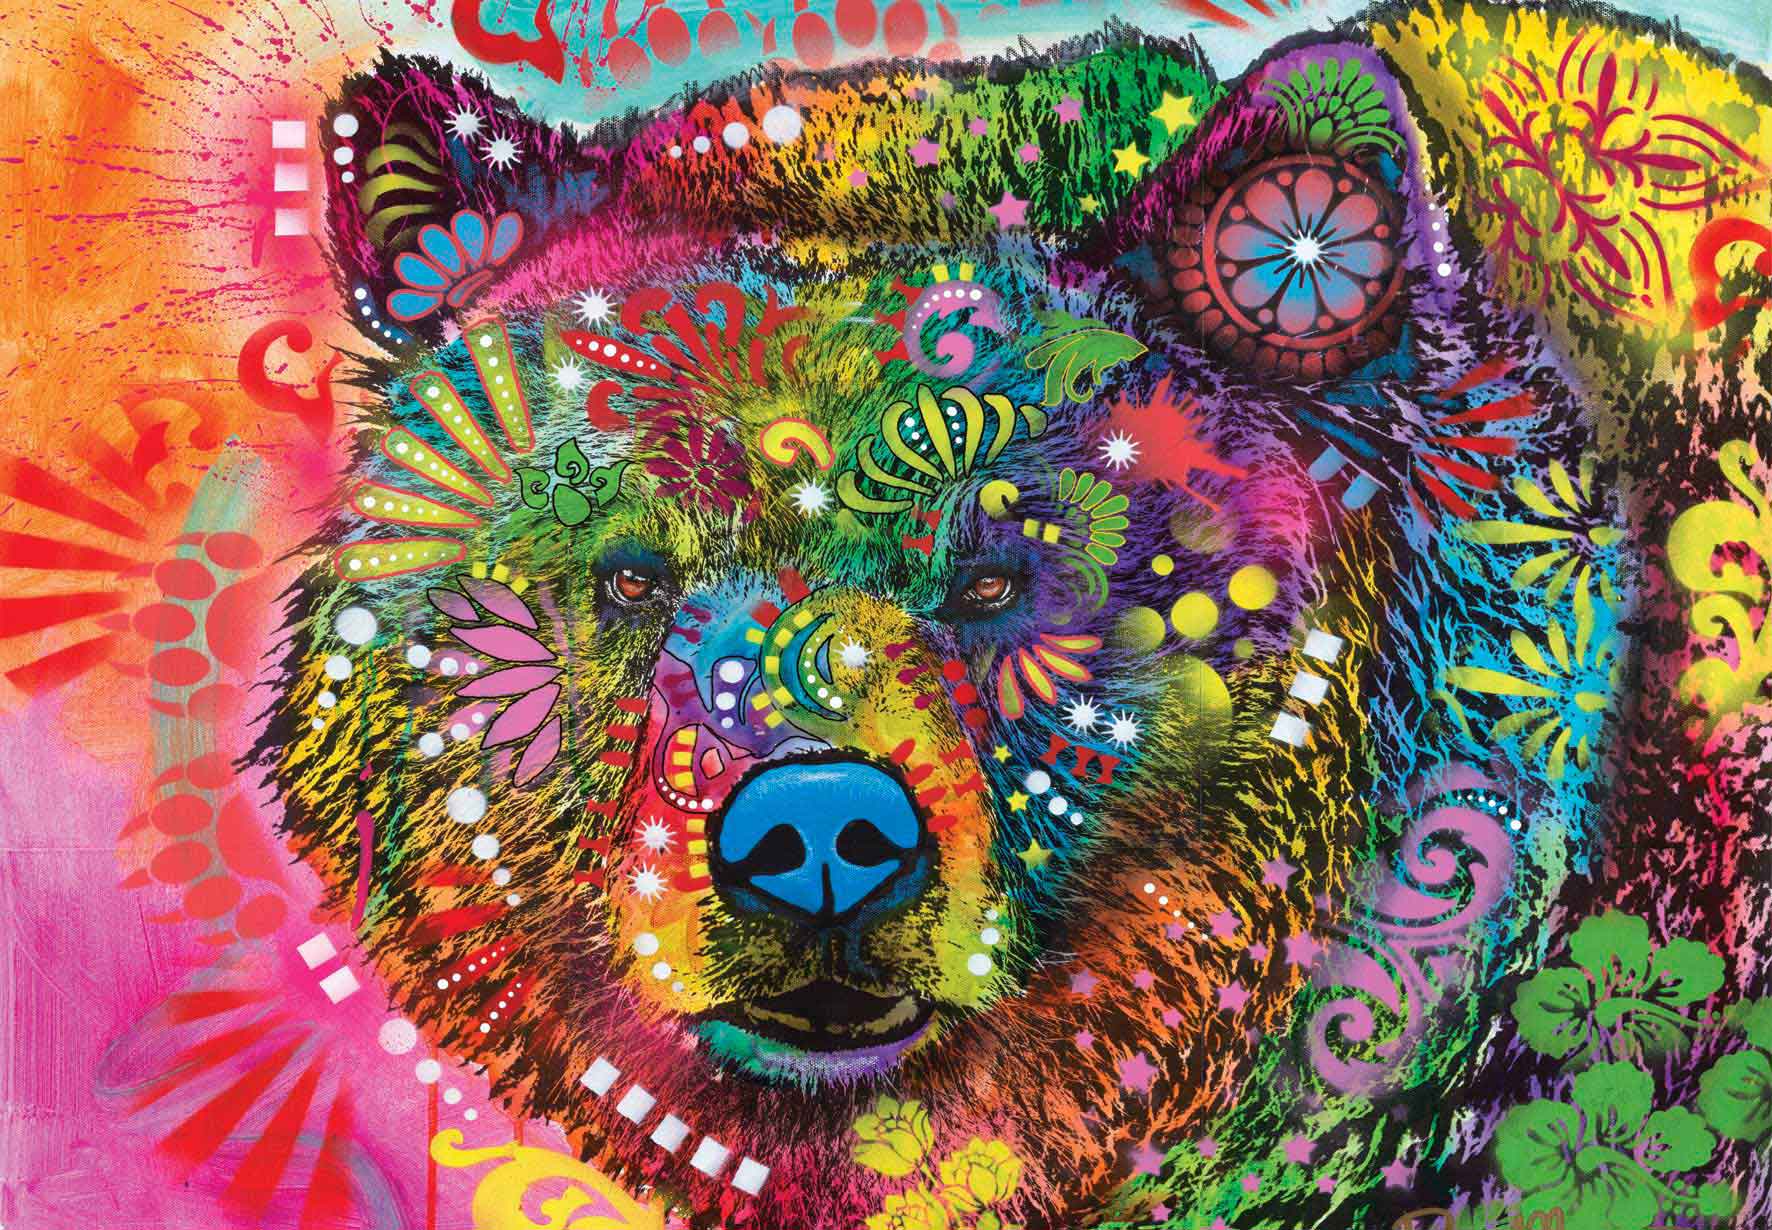 Puzzle Anatolian Urso Colorido de 500 peças